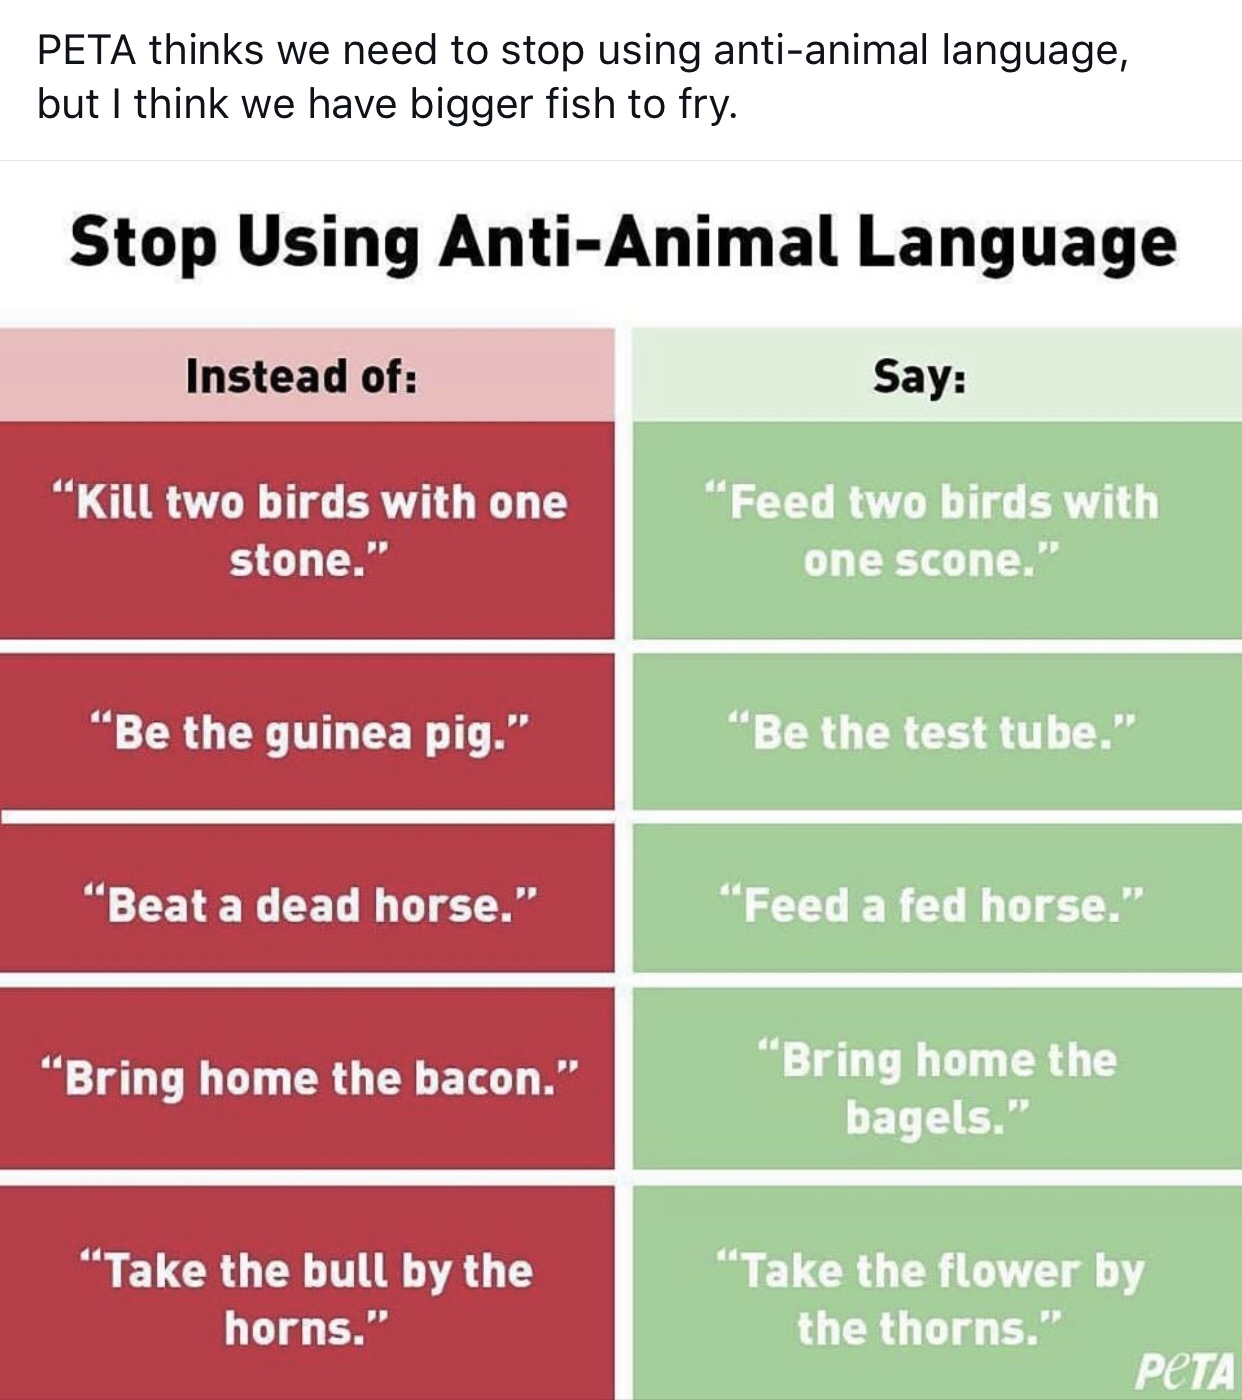 people eat tasty animals - meme